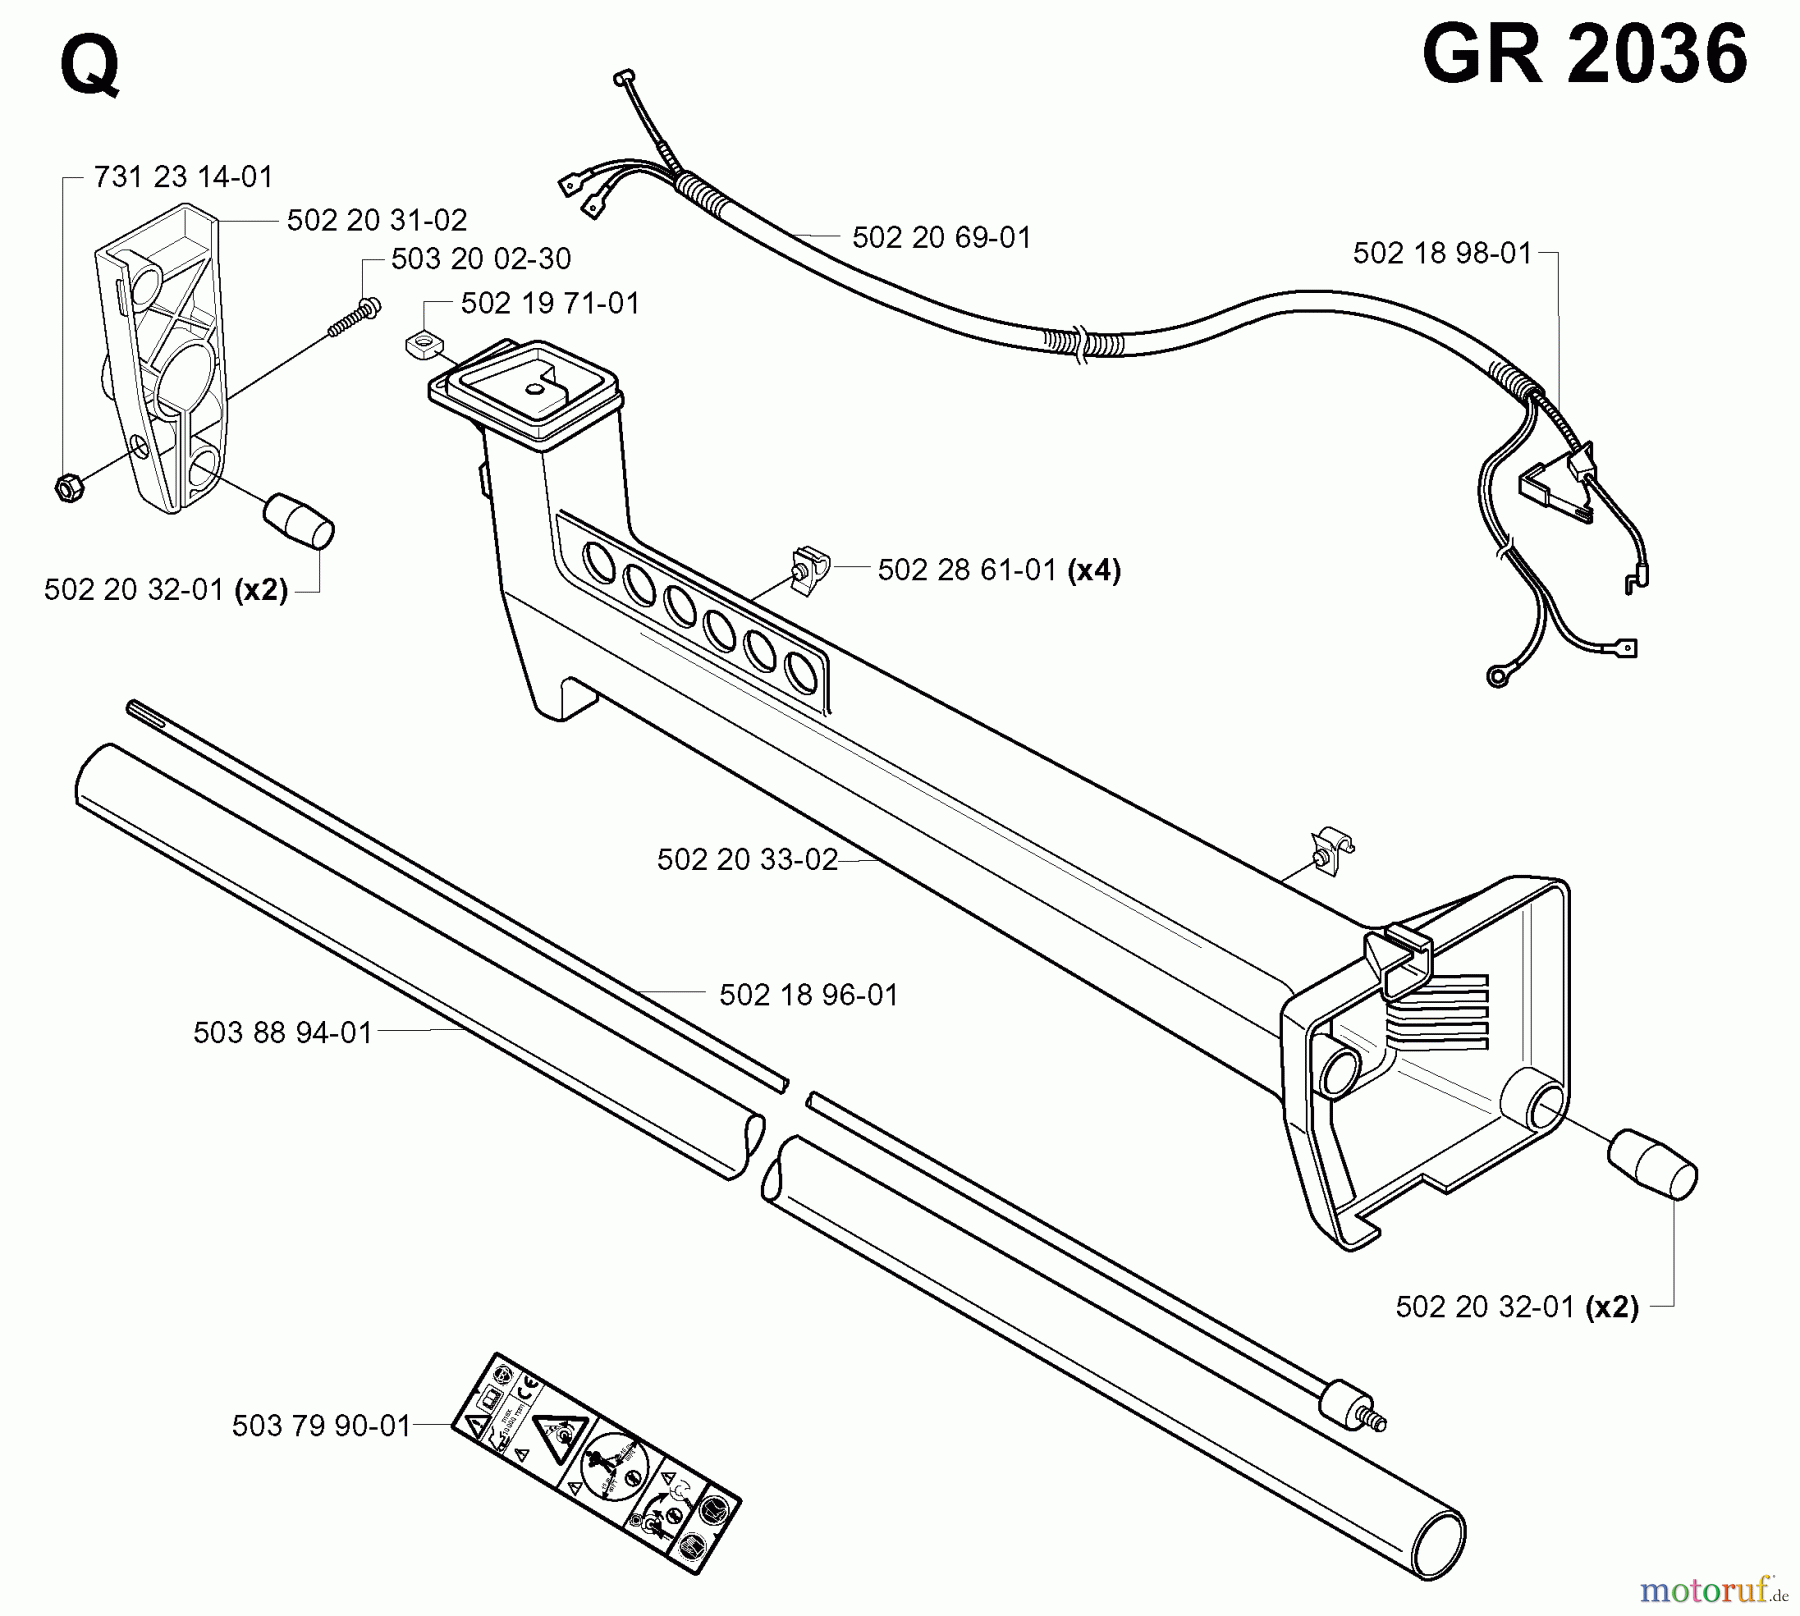  Jonsered Motorsensen, Trimmer GR2036 - Jonsered String/Brush Trimmer (2000-10) SHAFT